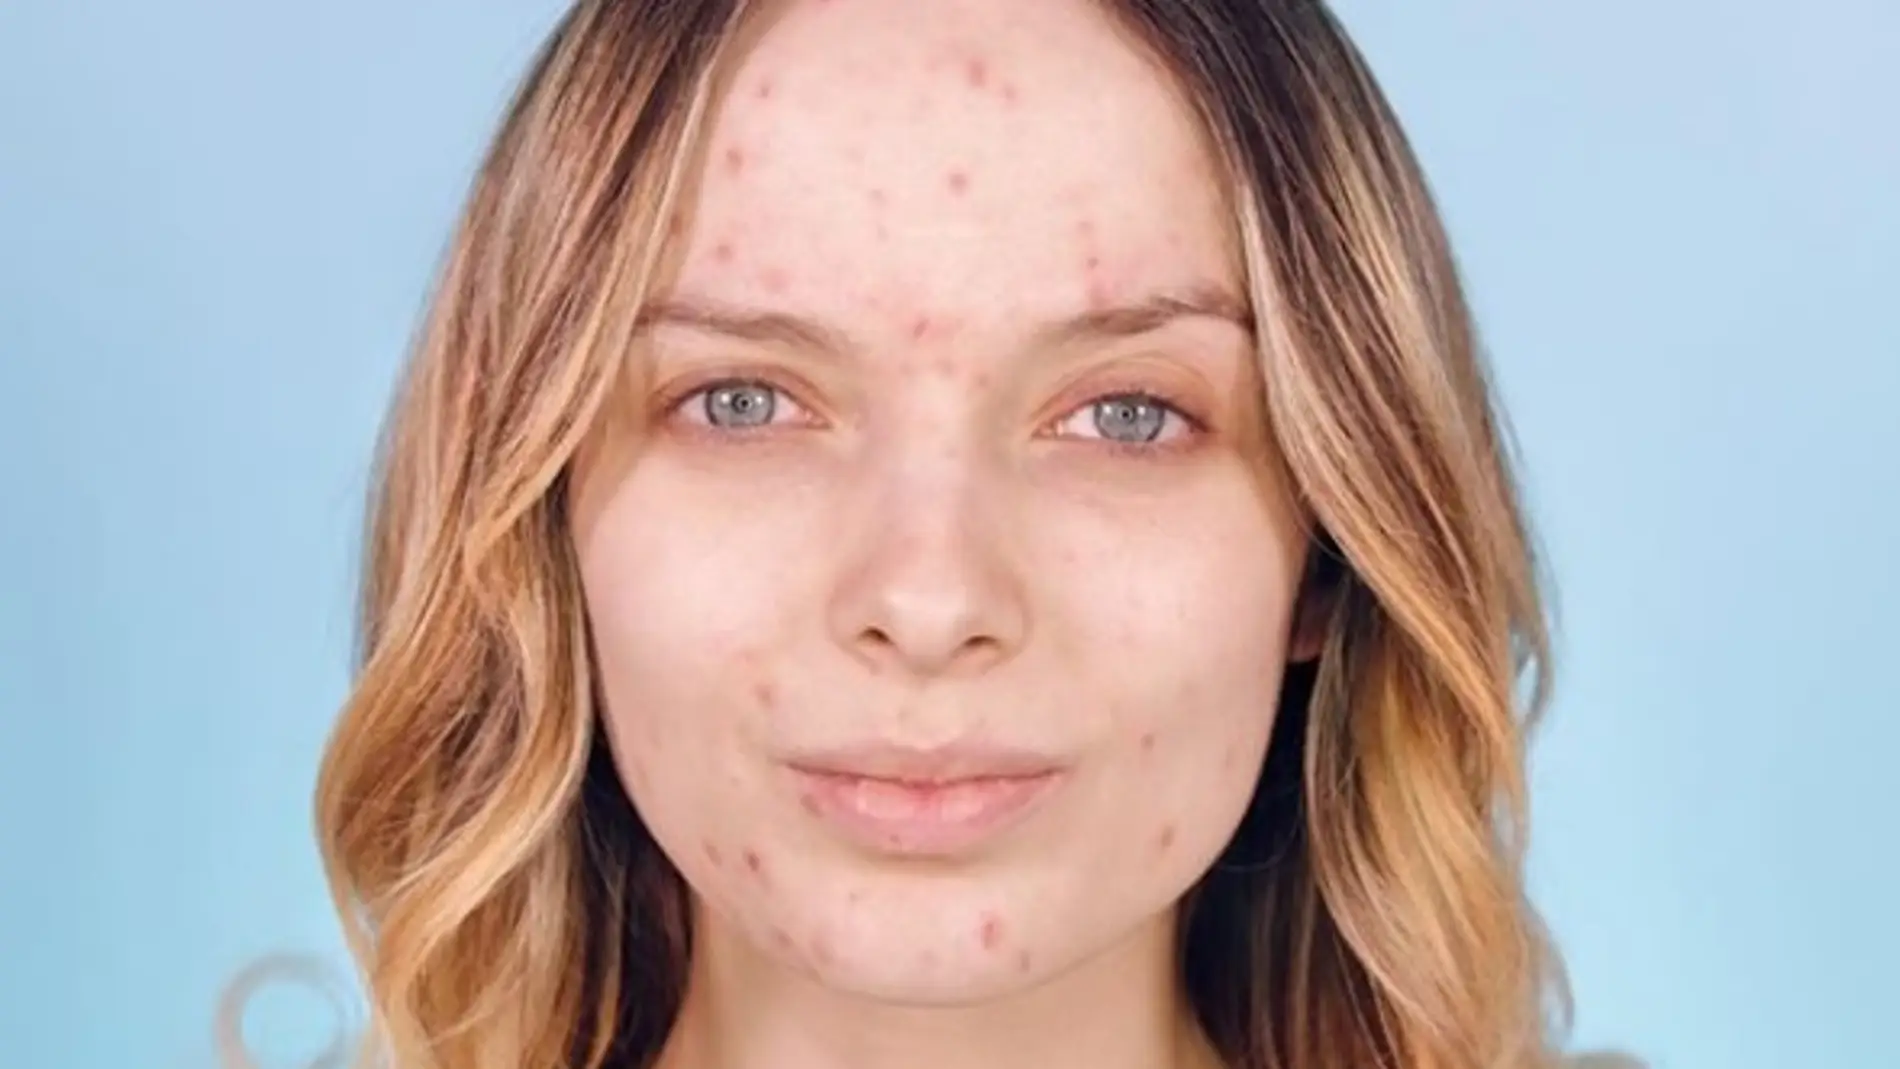 Un grupo de mujeres publica fotos sin maquillaje para normalizar el acné